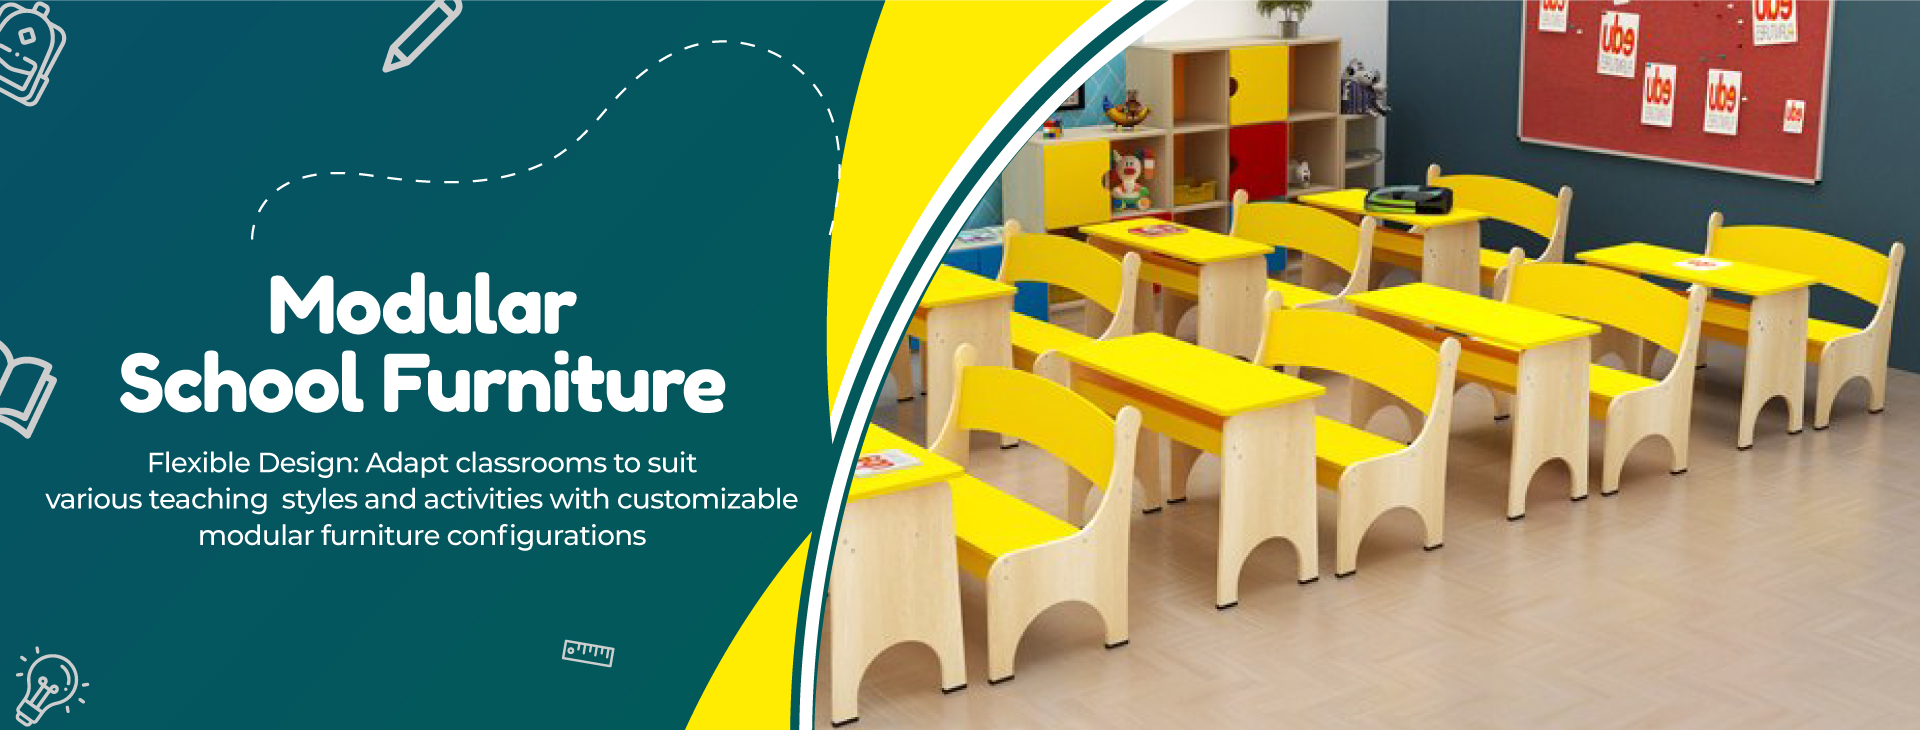 Modular School Furniture Manufacturers in Alipurduar